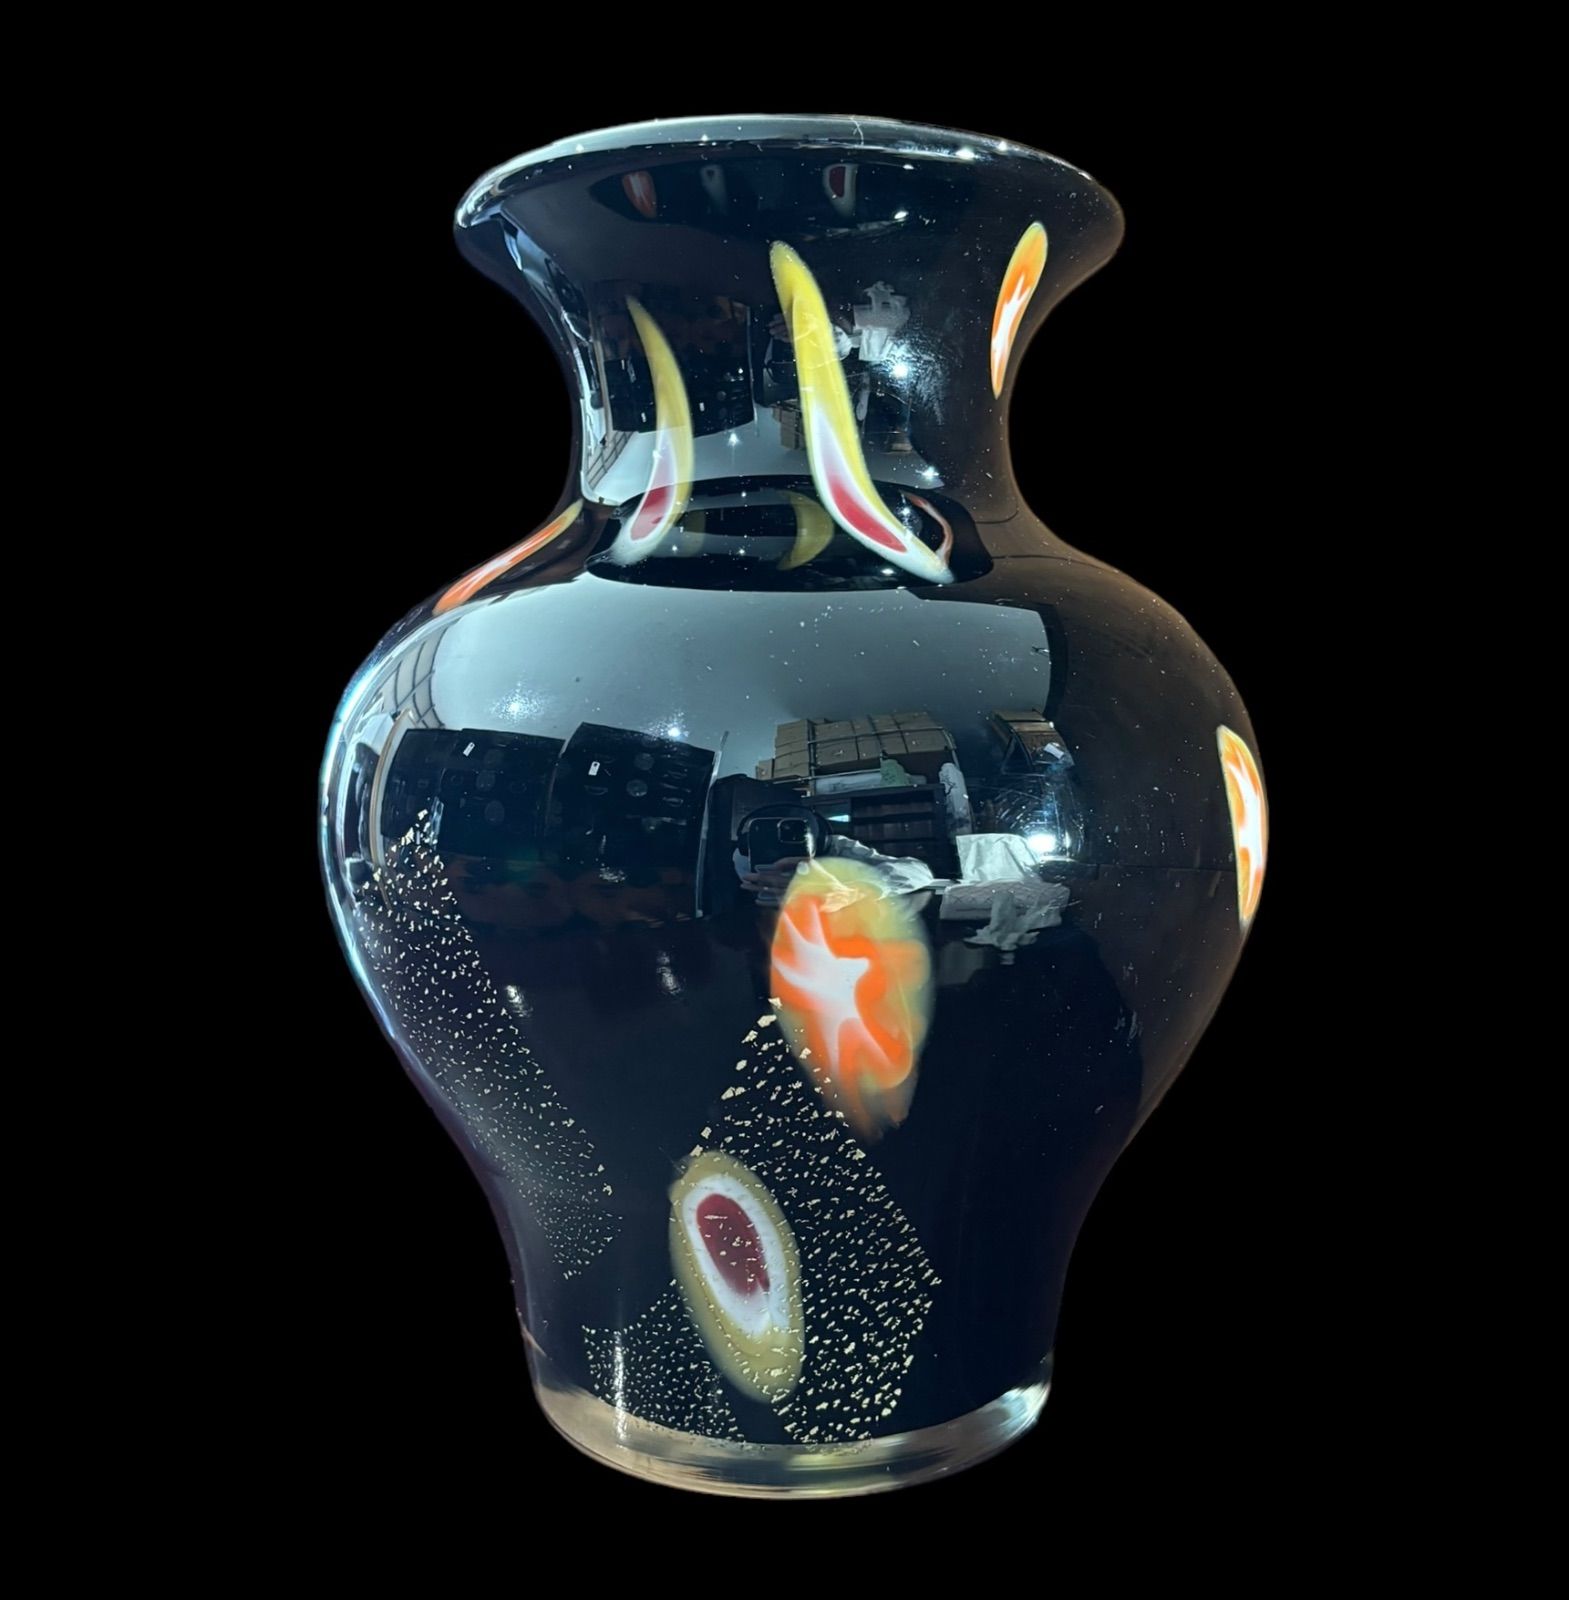 カメイガラス [金箔 ブラック] 花瓶 花器 花入れ 壺 丸壺 フラワーベース 置物 レトロ インテリア ヴィンテージ